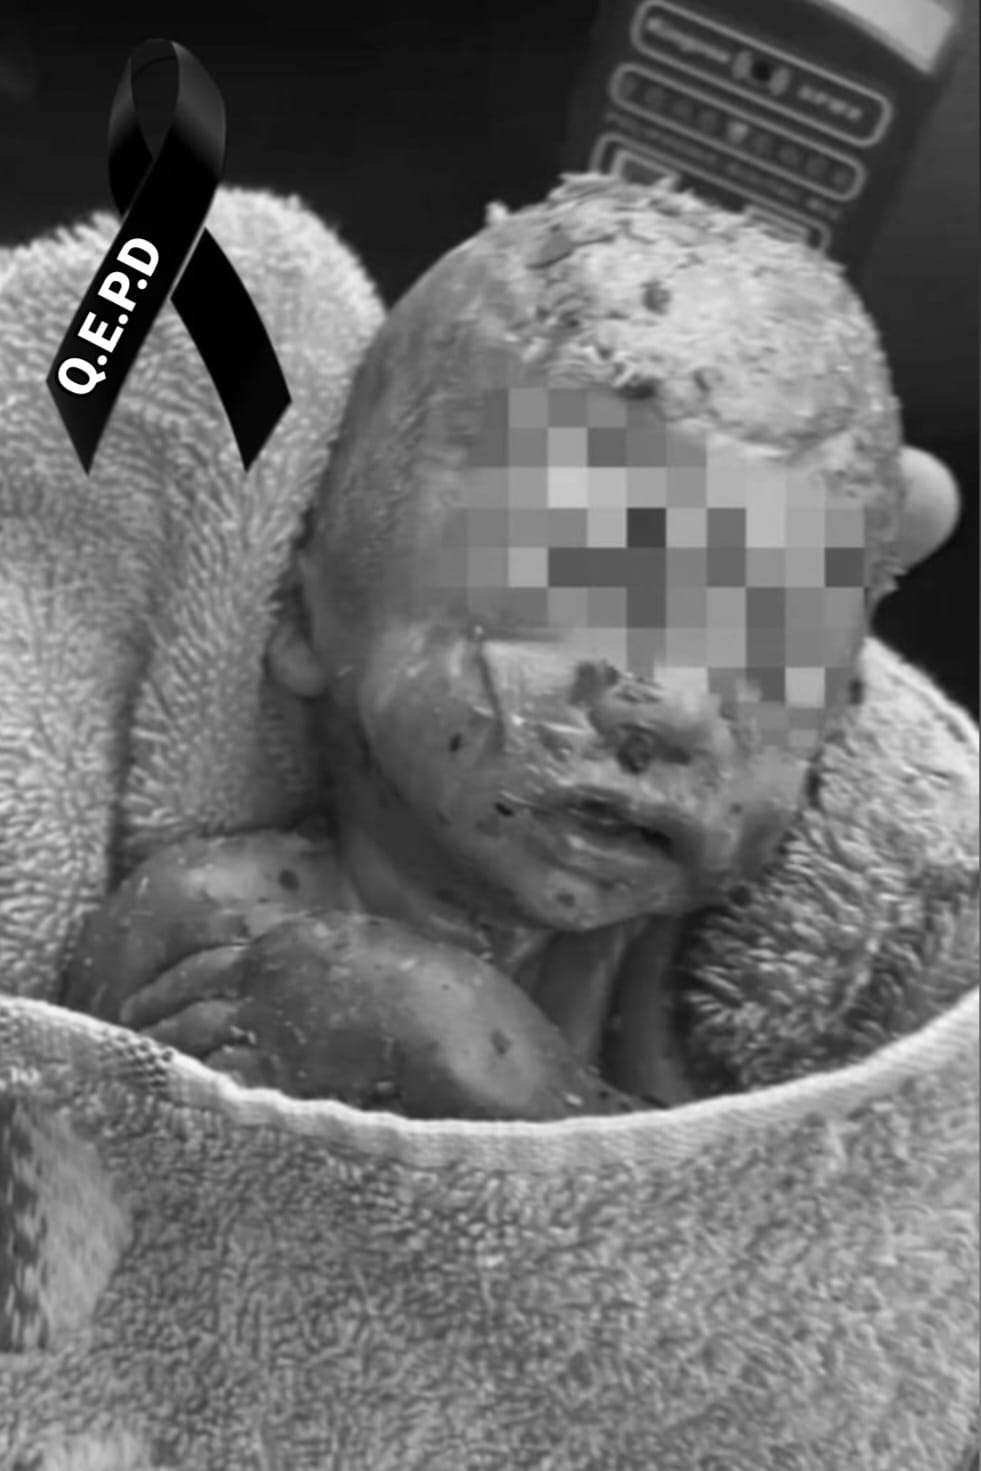 Triste final: Murió el bebé que nació y fue abandonado en la concesionaria